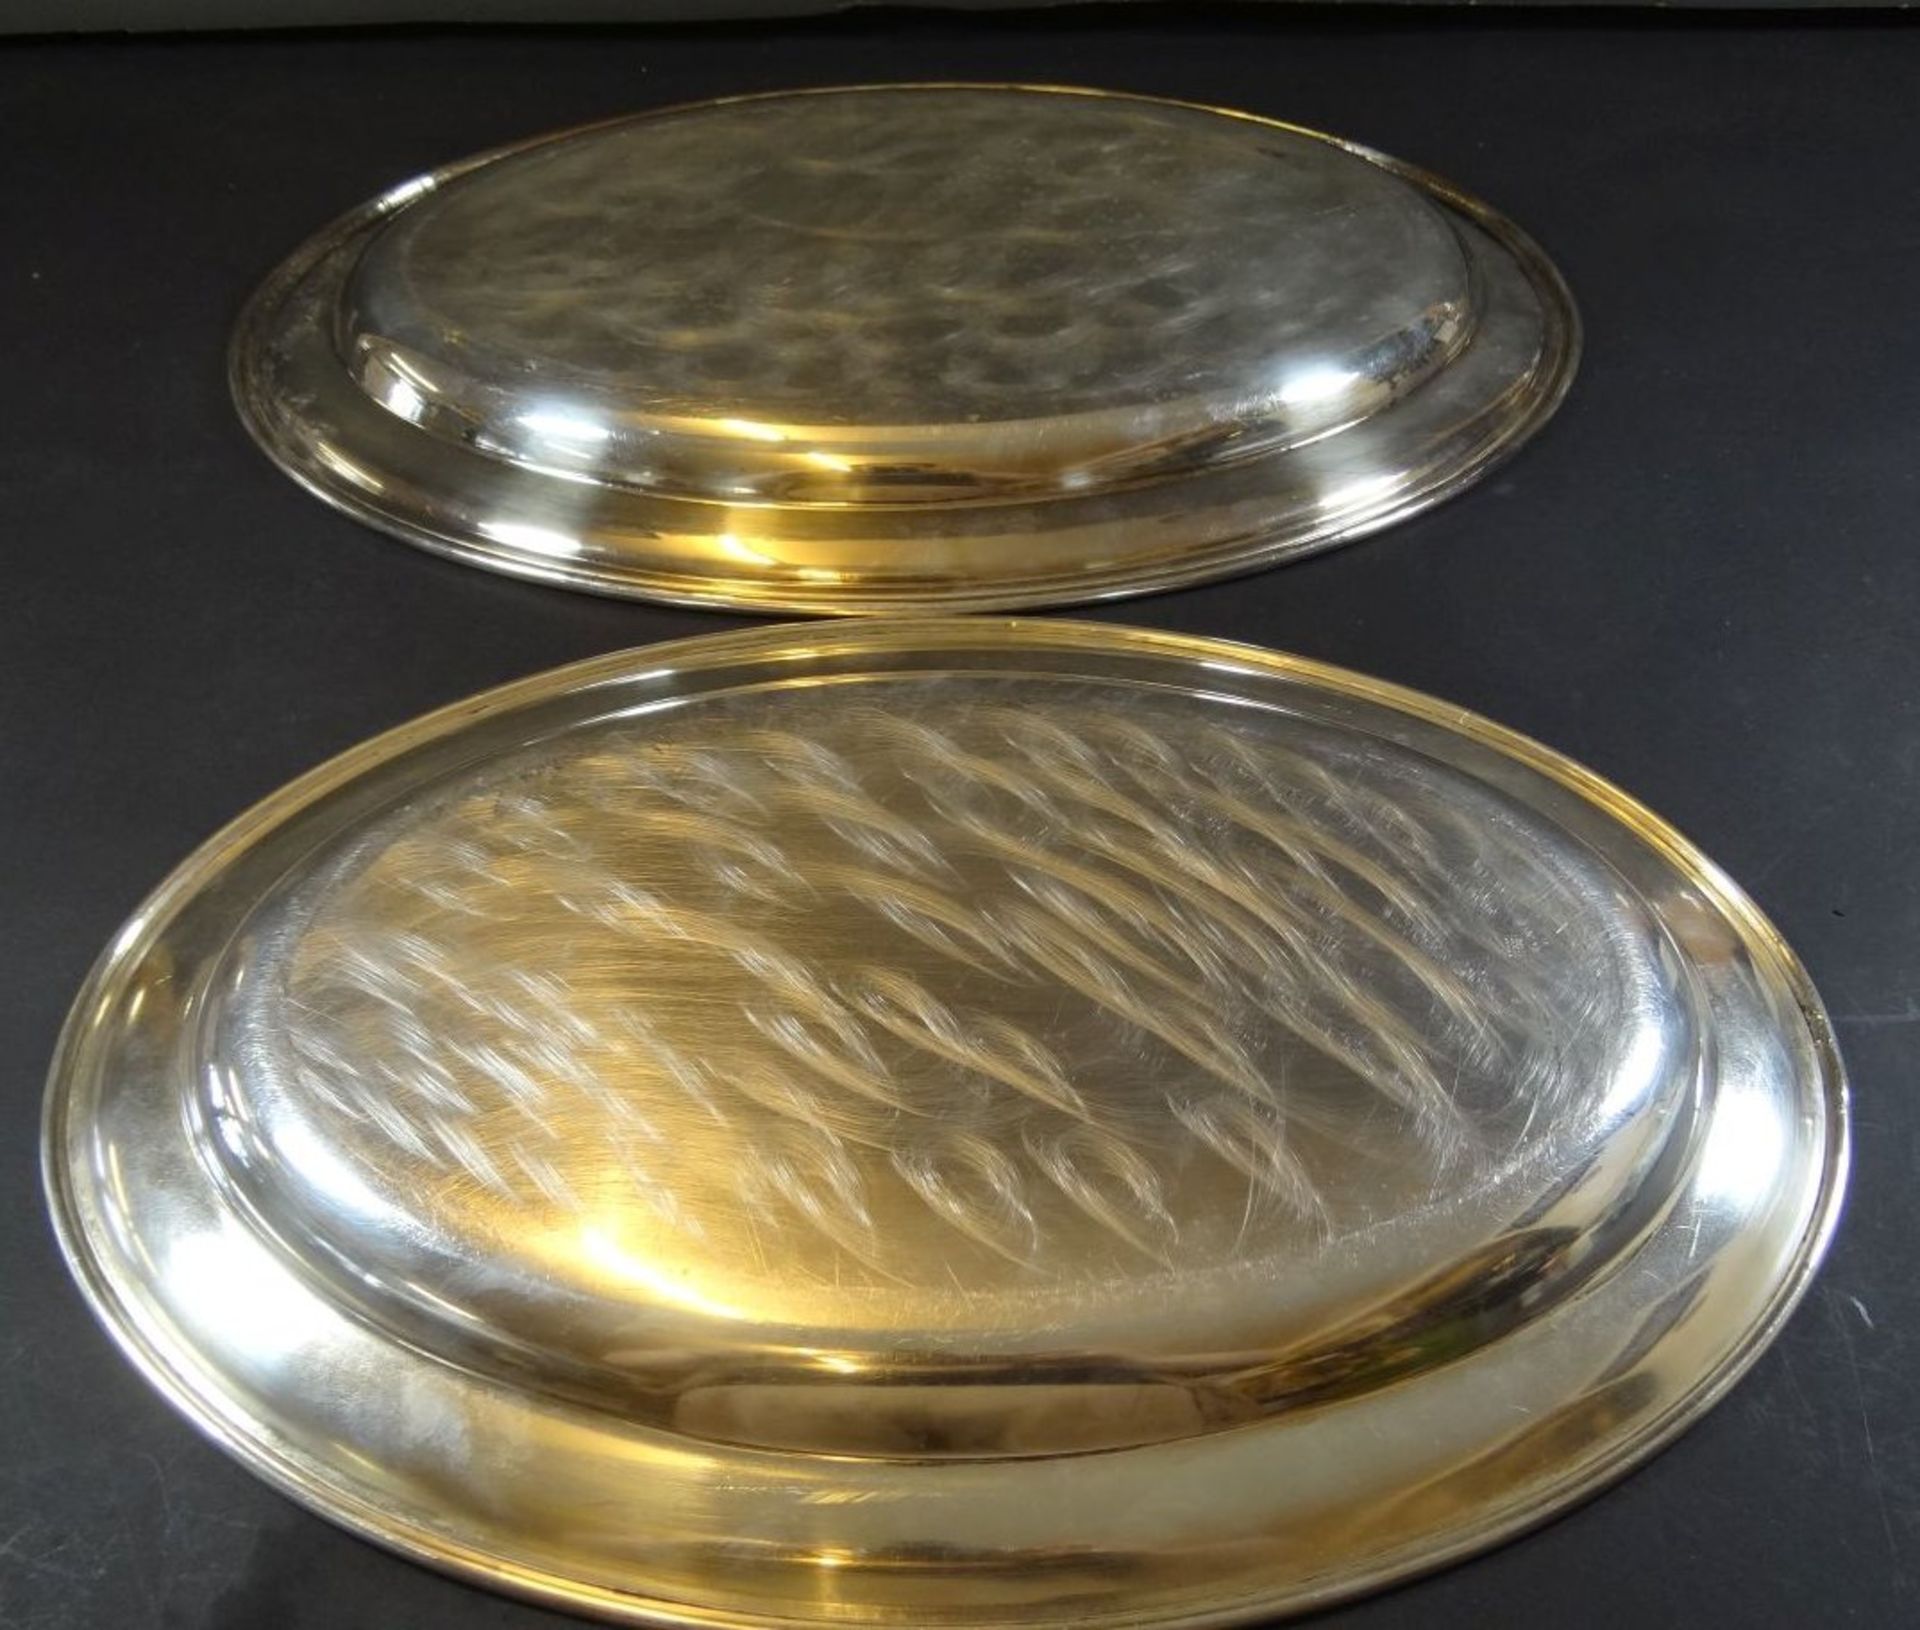 2x grosse ovale Fleischplatten, plated, 46x31 und 43x28 cm - Bild 4 aus 5